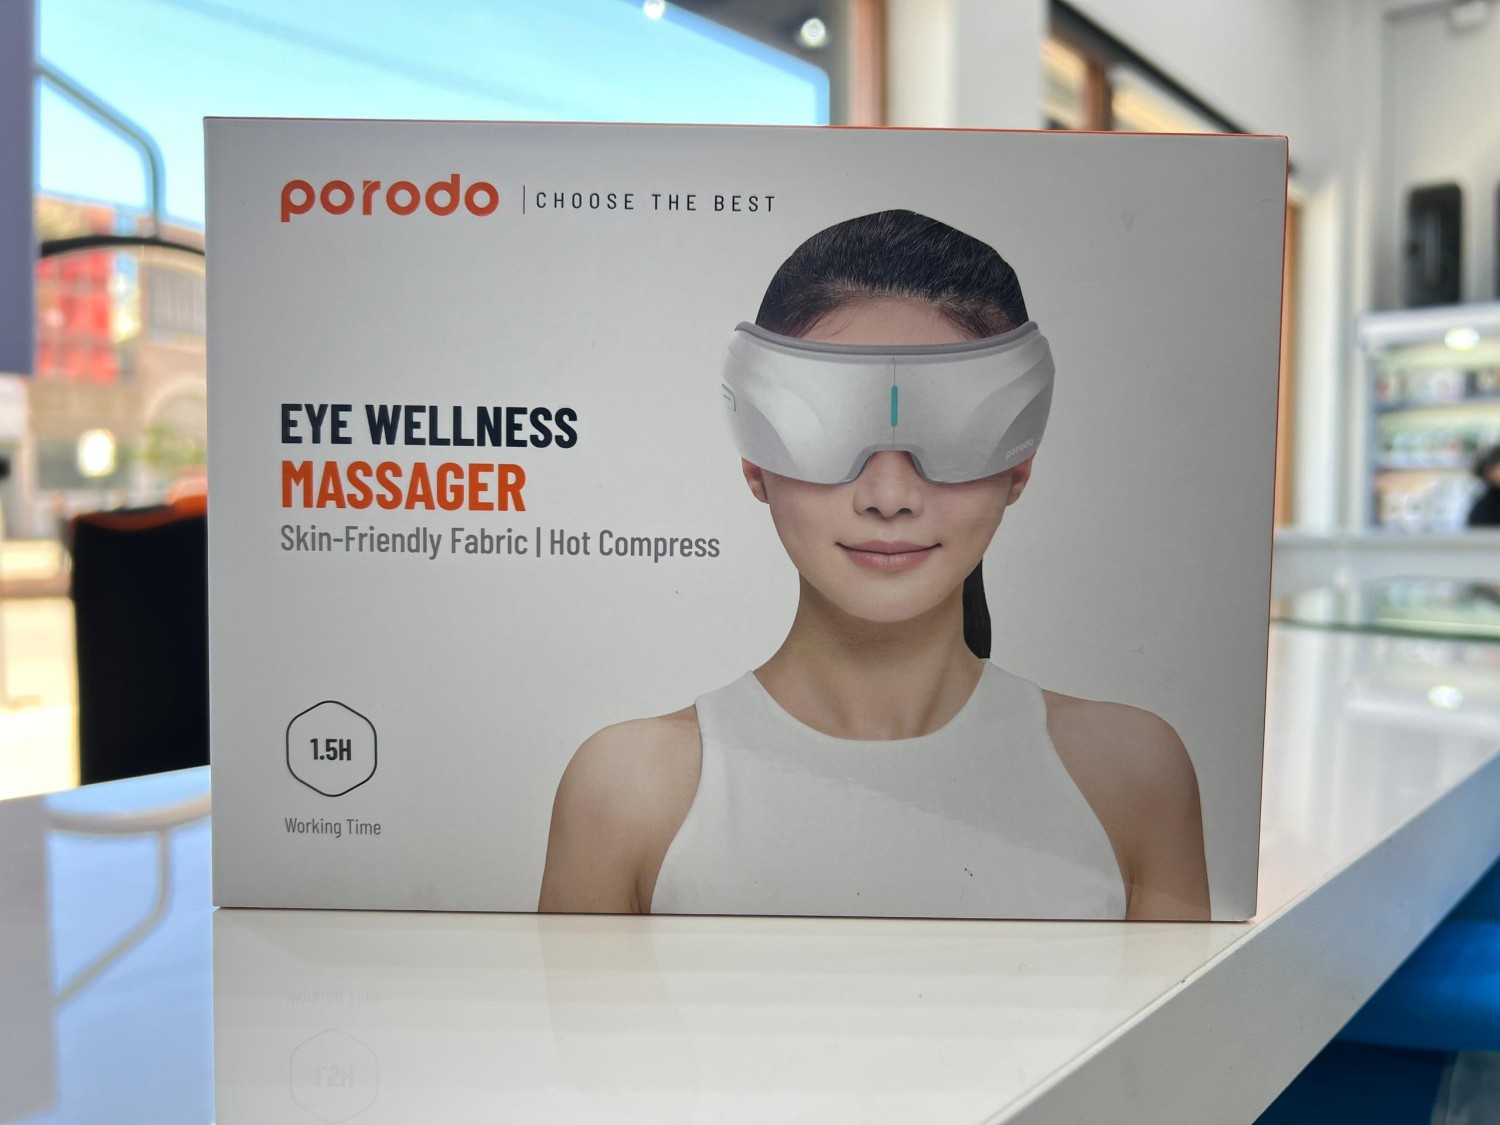 Porodo Eye Wellness Massager 1.5H